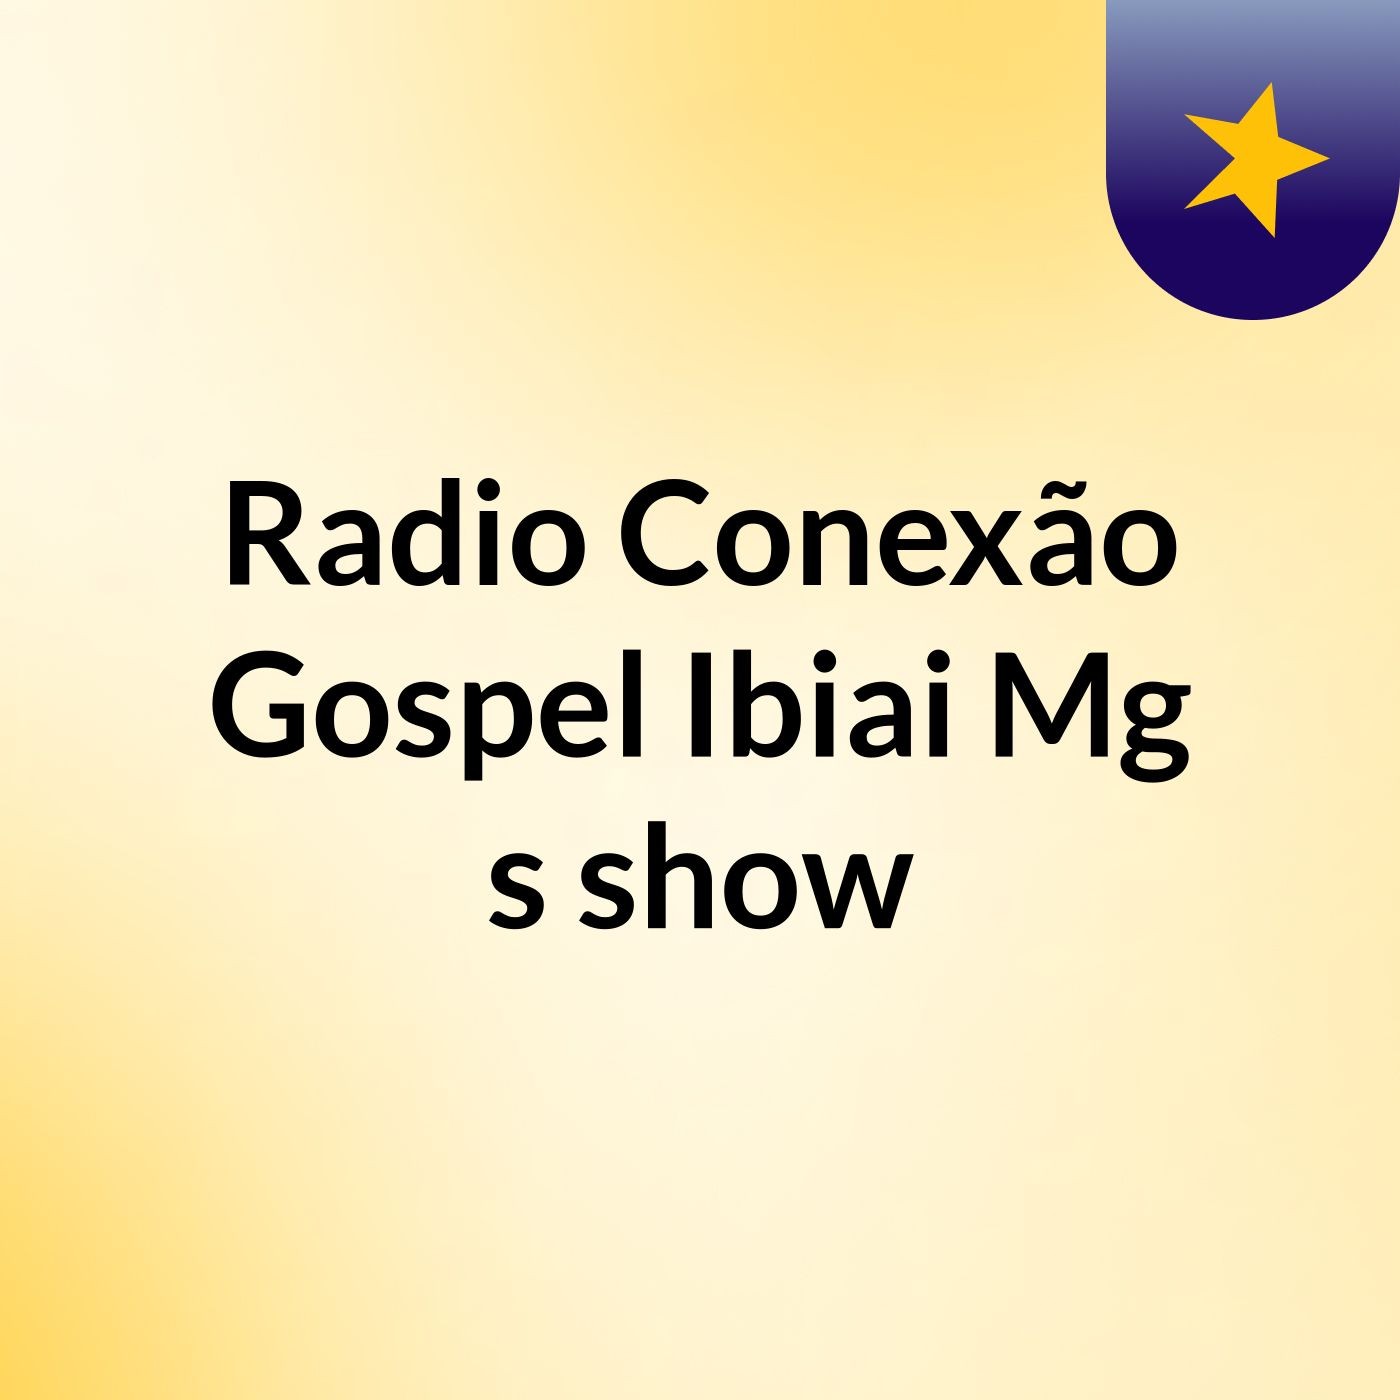 Radio Conexão Gospel Ibiai Mg's show